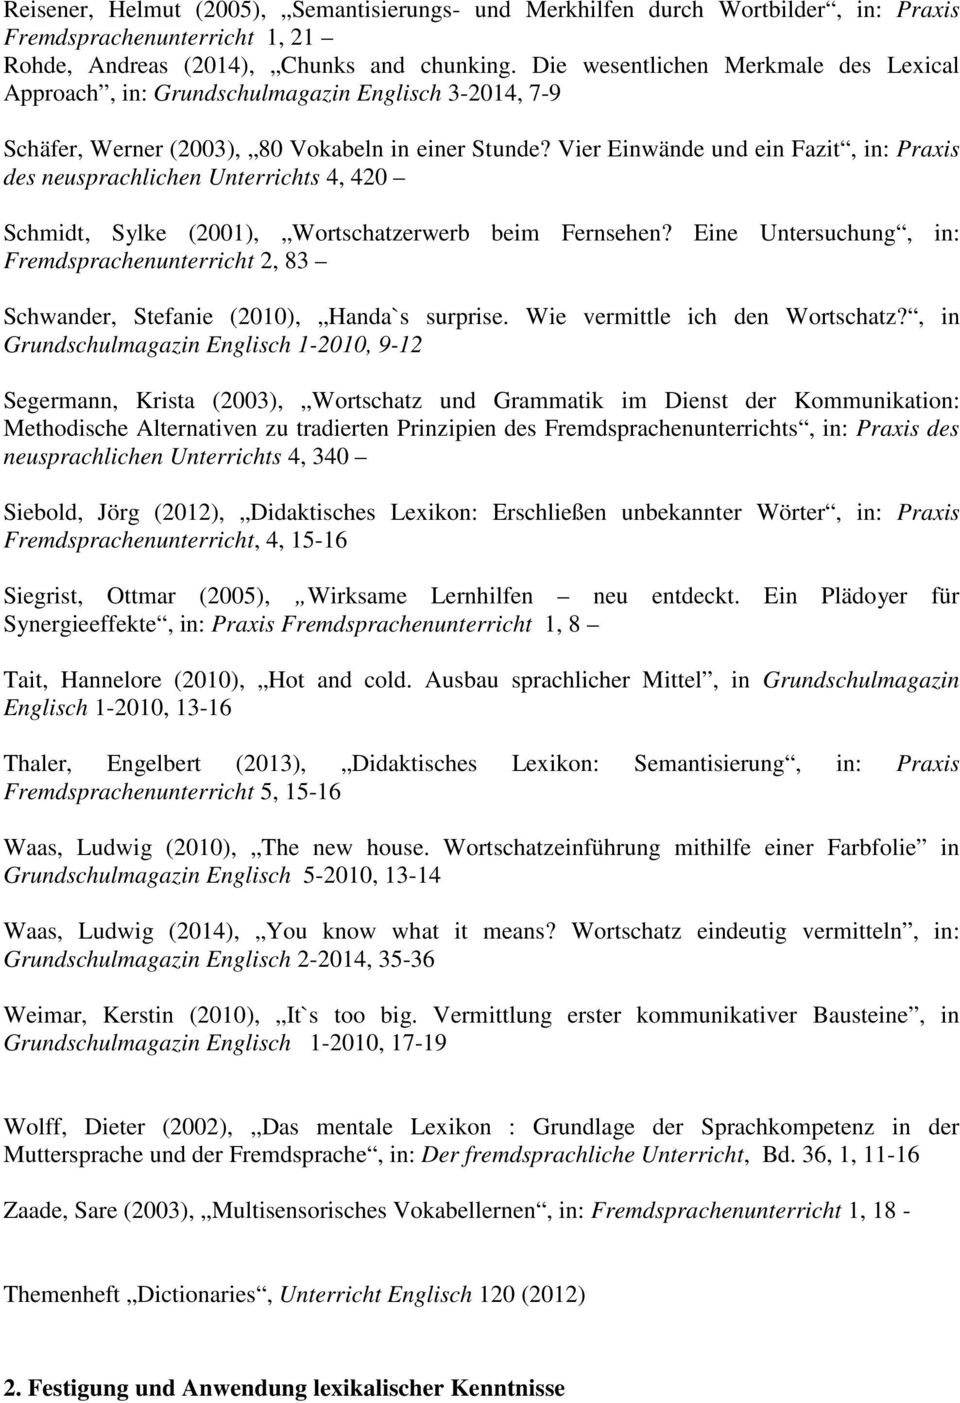 Vier Einwände und ein Fazit, in: Praxis des neusprachlichen Unterrichts 4, 420 Schmidt, Sylke (2001), Wortschatzerwerb beim Fernsehen?